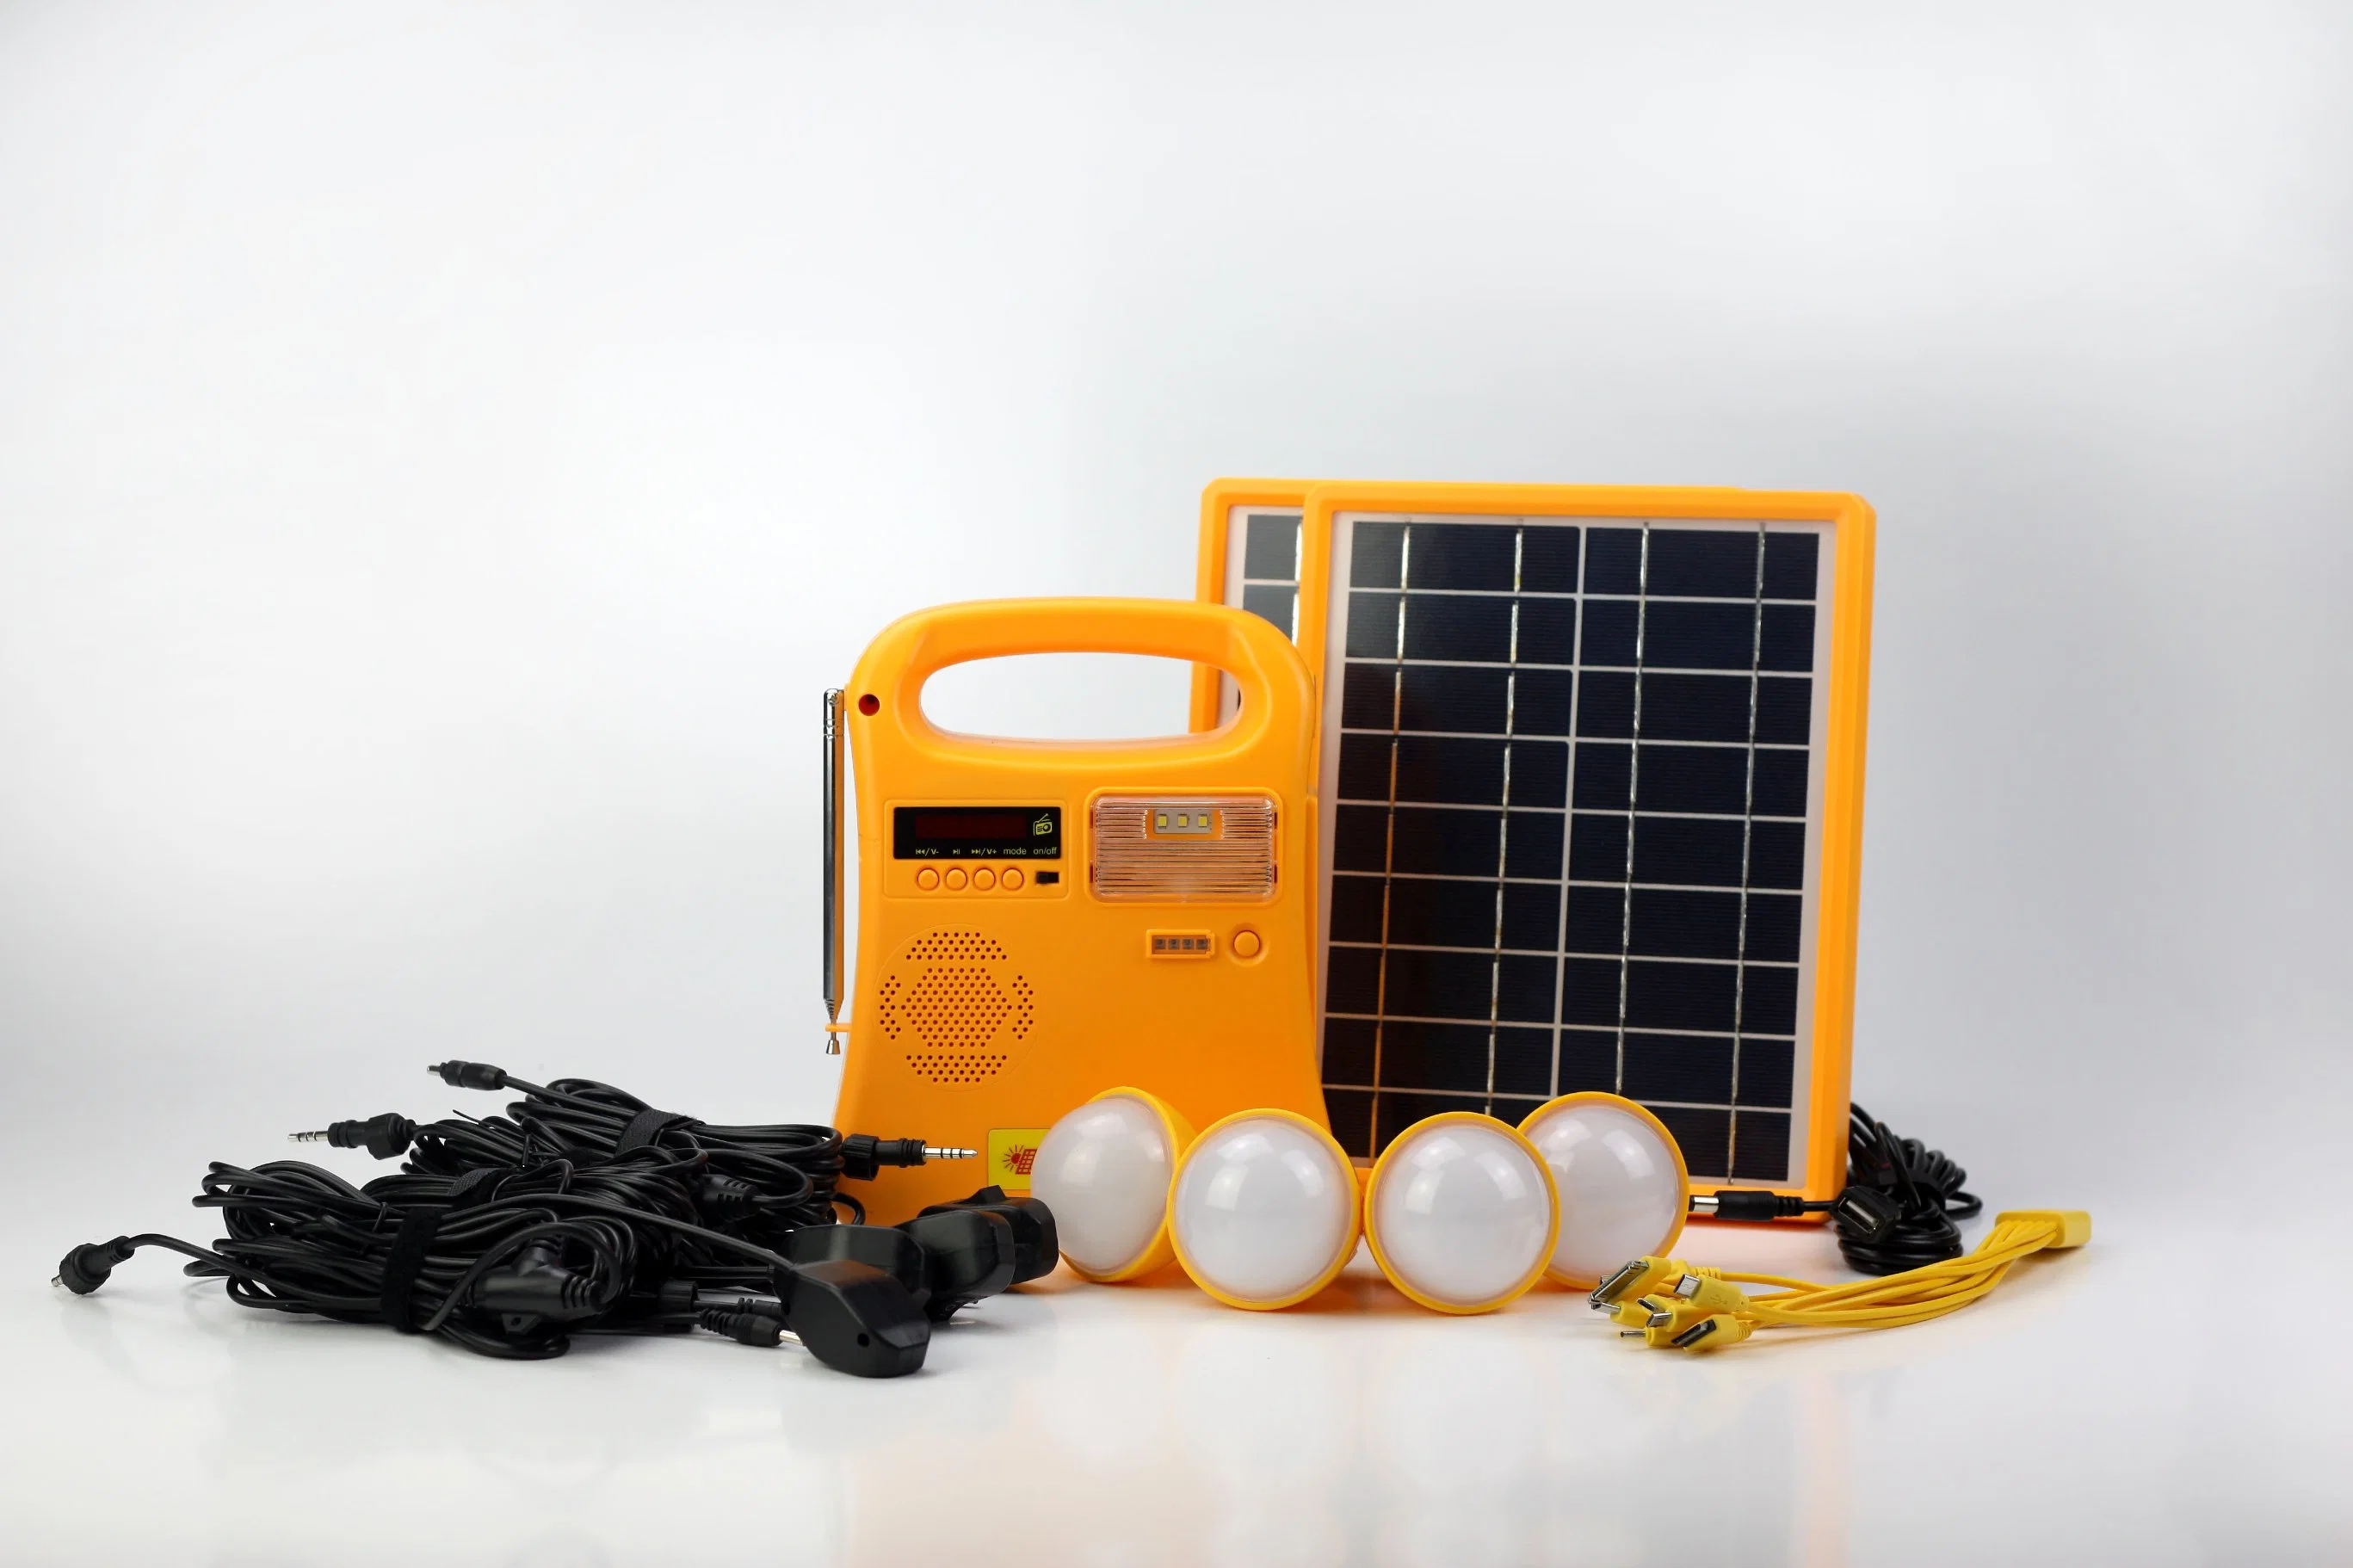 10Вт портативный домашнего использования солнечной системы освещения комплекты солнечной энергии солнечного генератора